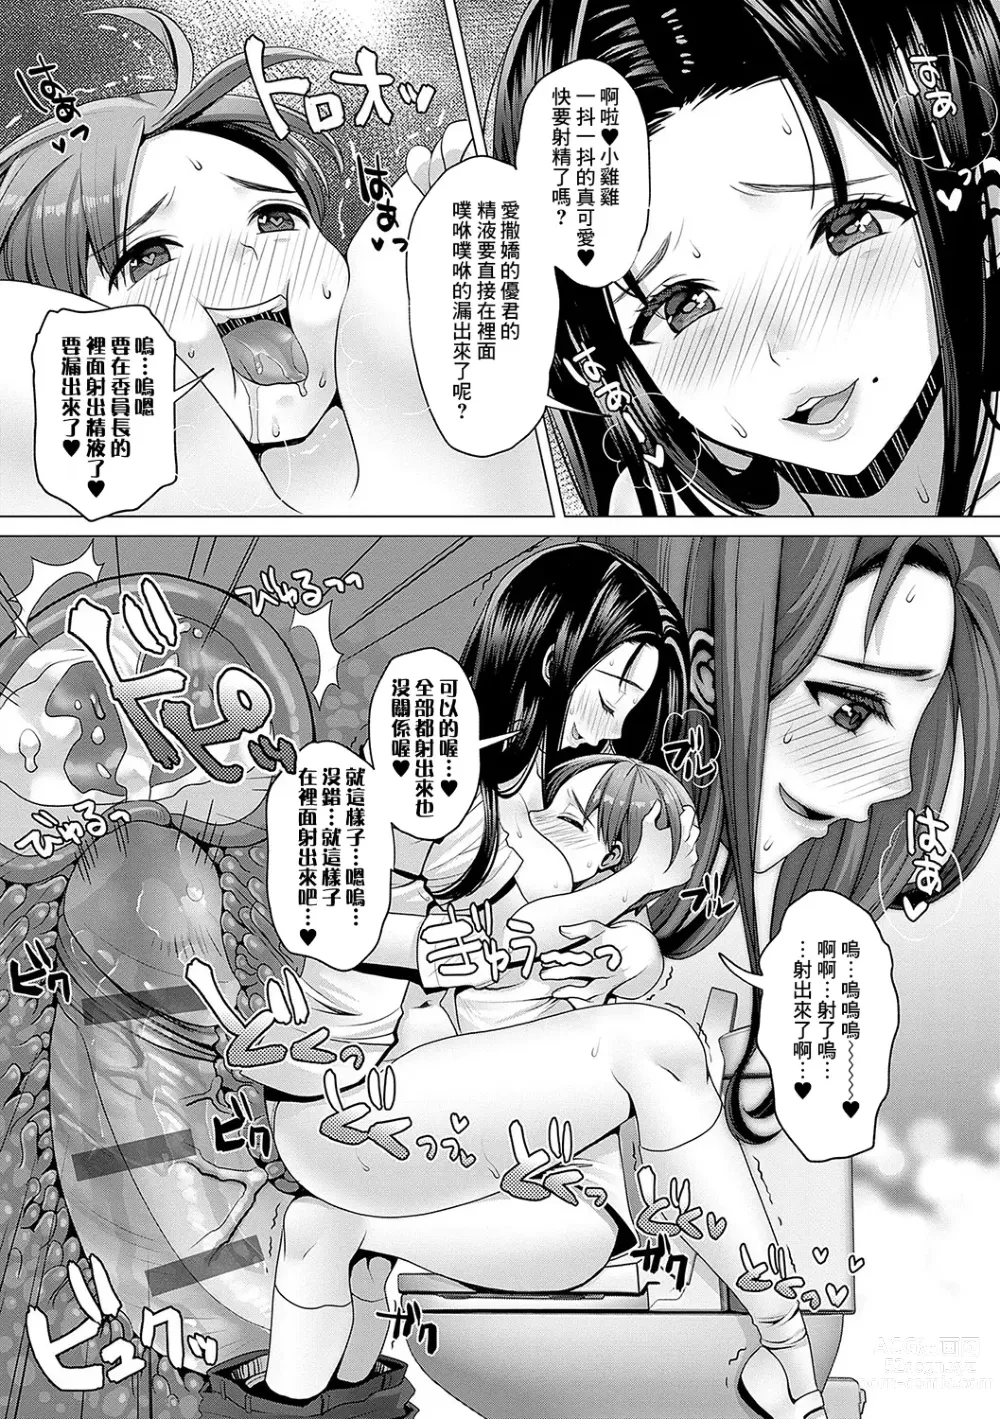 Page 9 of manga Amayakashi Gakuen no Amayakashi Gakuen SEIkatsu ♥